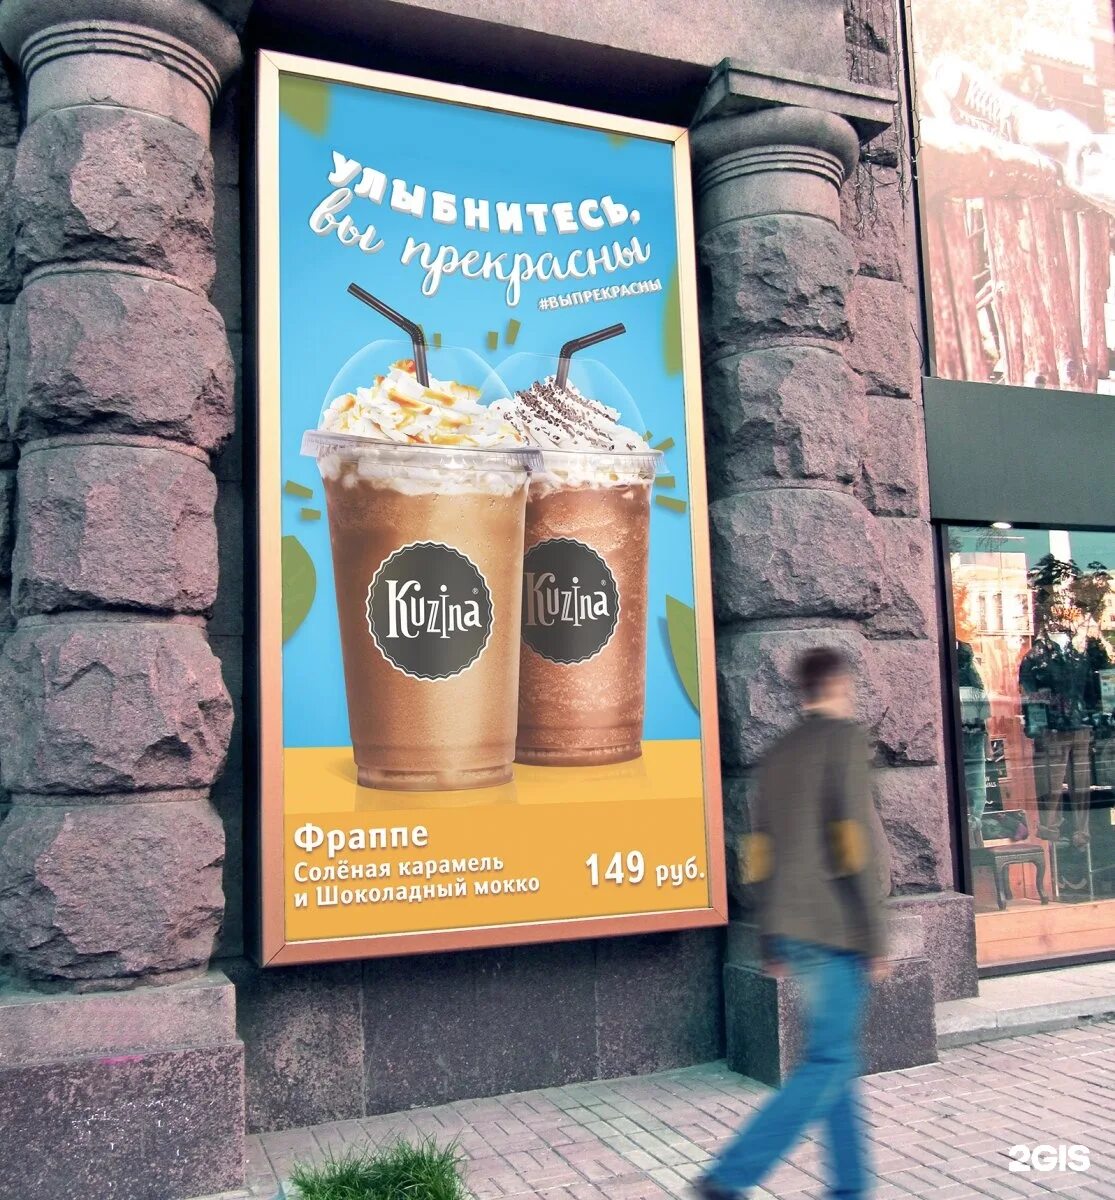 Кузина проза ру. Рекламный баннер кофейни. Кафе Kuzina. Кузина кофейня. Кузина реклама.